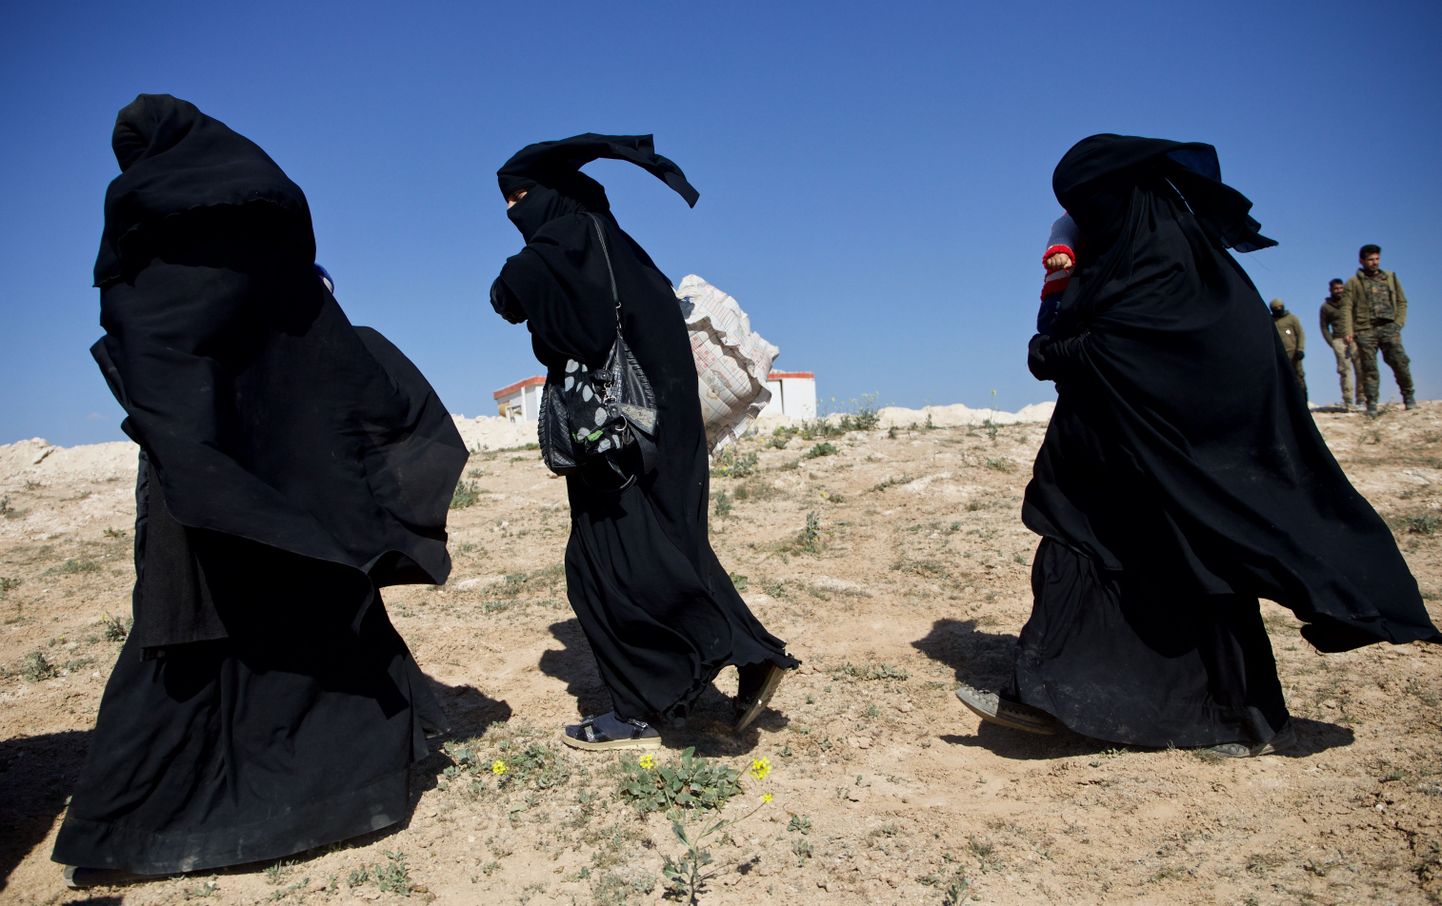 Naised pagemas ISISe viimasest kantsist Baghouzist Süürias.